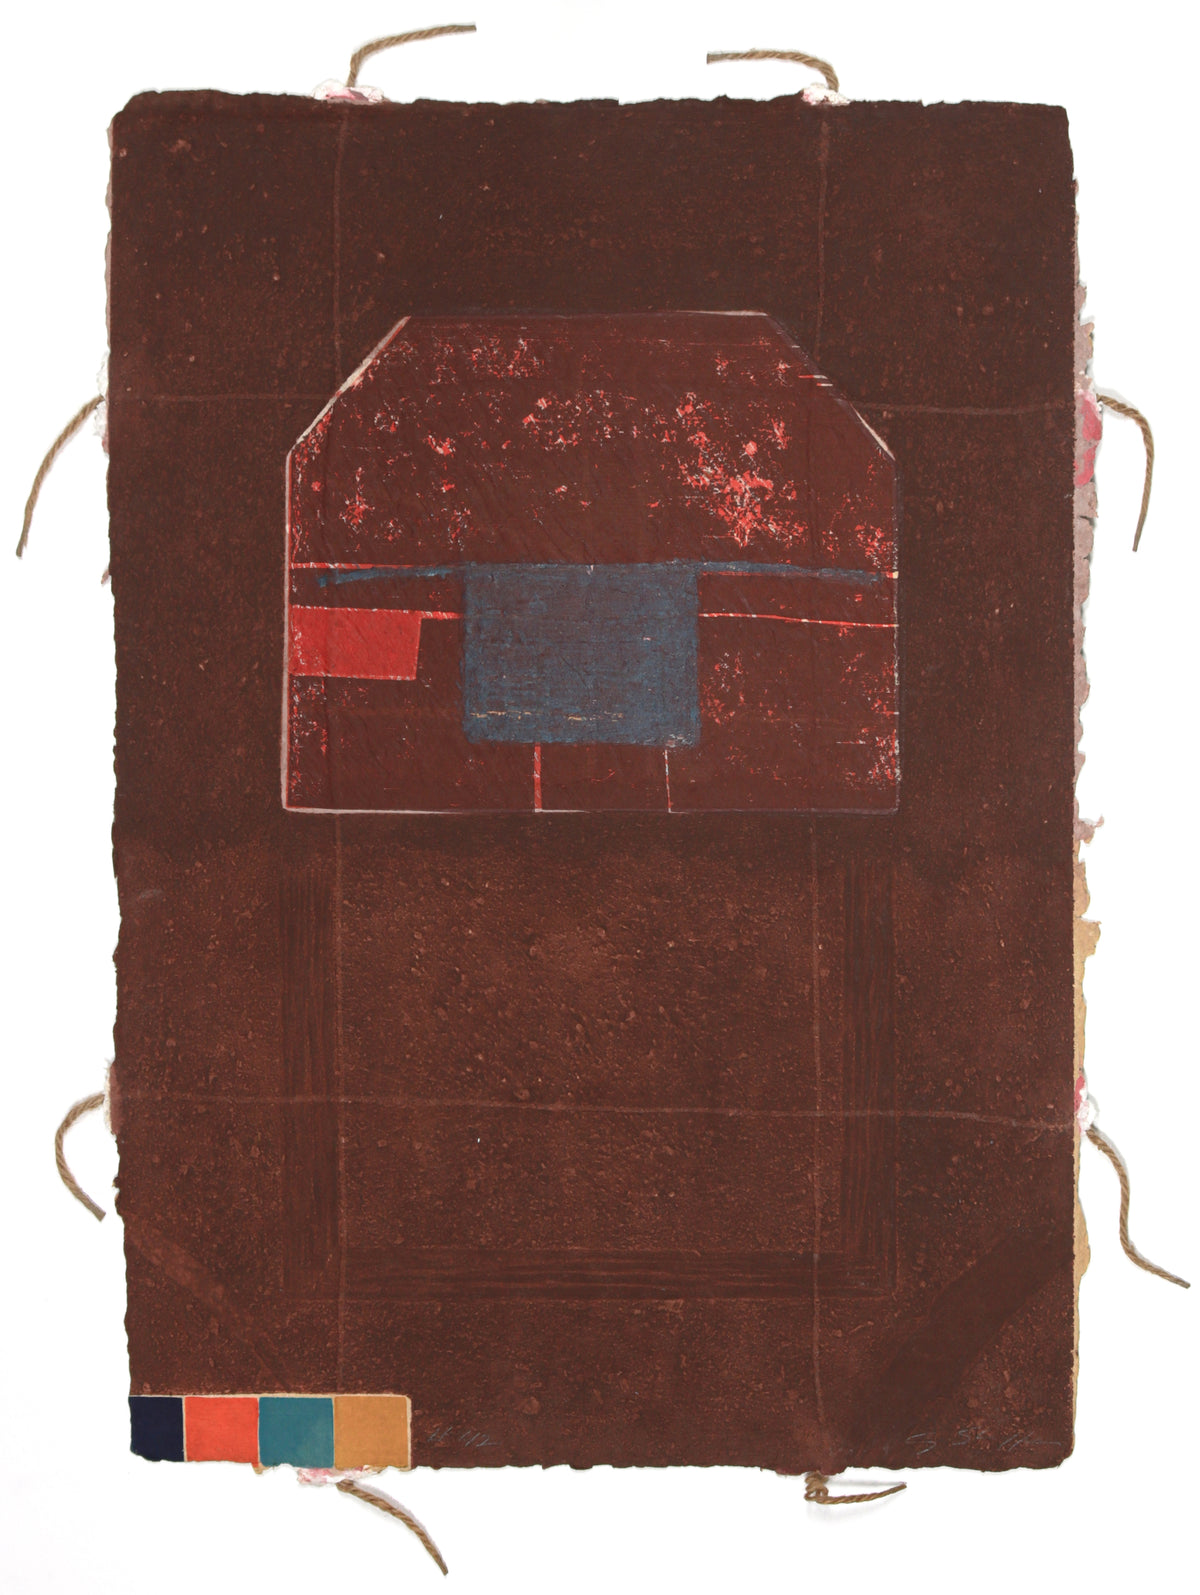 &lt;i&gt;#42&lt;/i&gt; &lt;br&gt;1980s Collograph on Handmade Paper with String &lt;br&gt;&lt;br&gt;#B6761